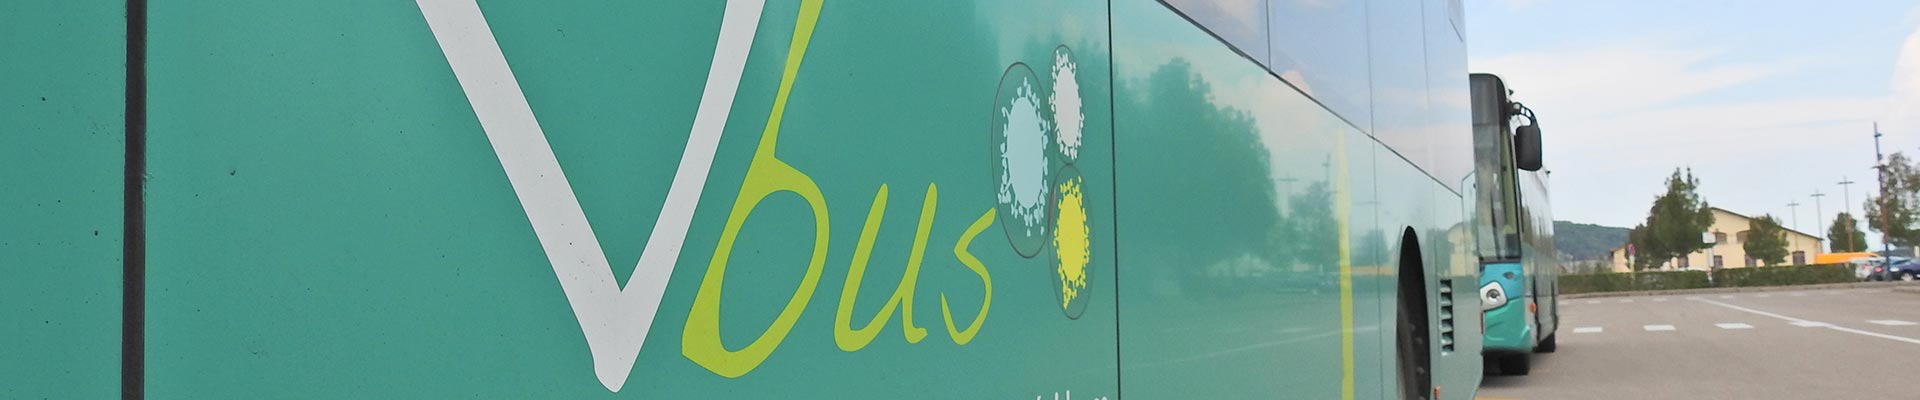 Vbus, transport en commun à Vesoul